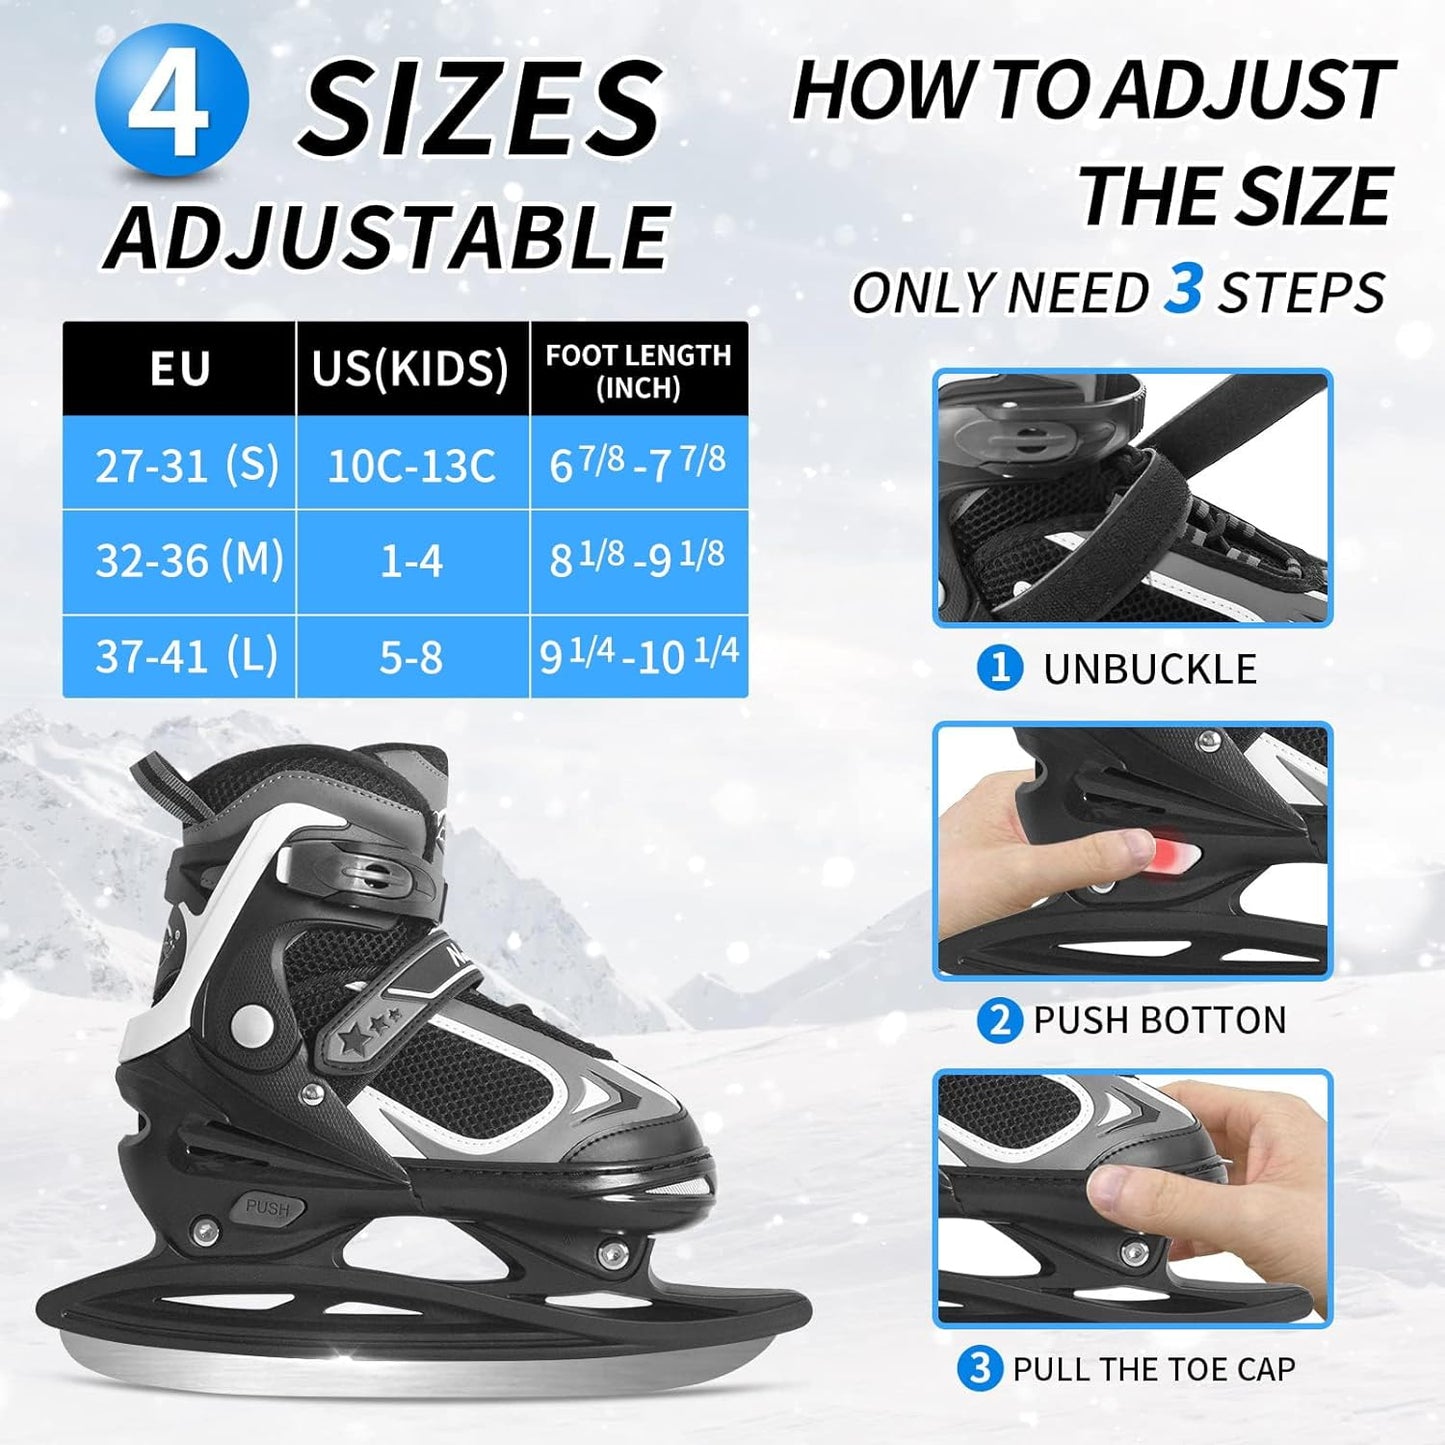 Nattork Adjustable Ice Skates - Black